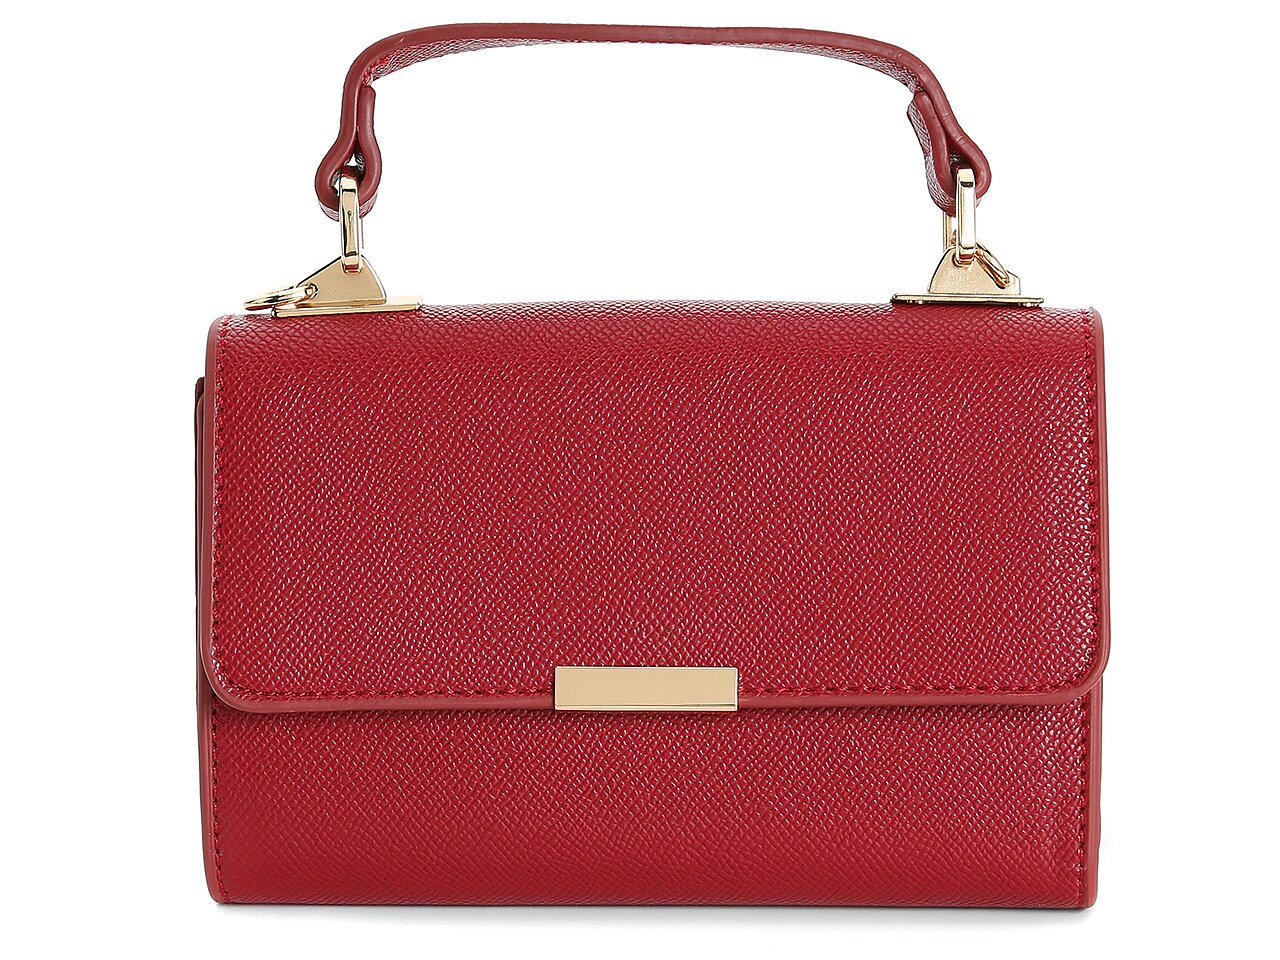 Moda Luxe Jennifer Clutch Women's Handbags & Accessories | DSW